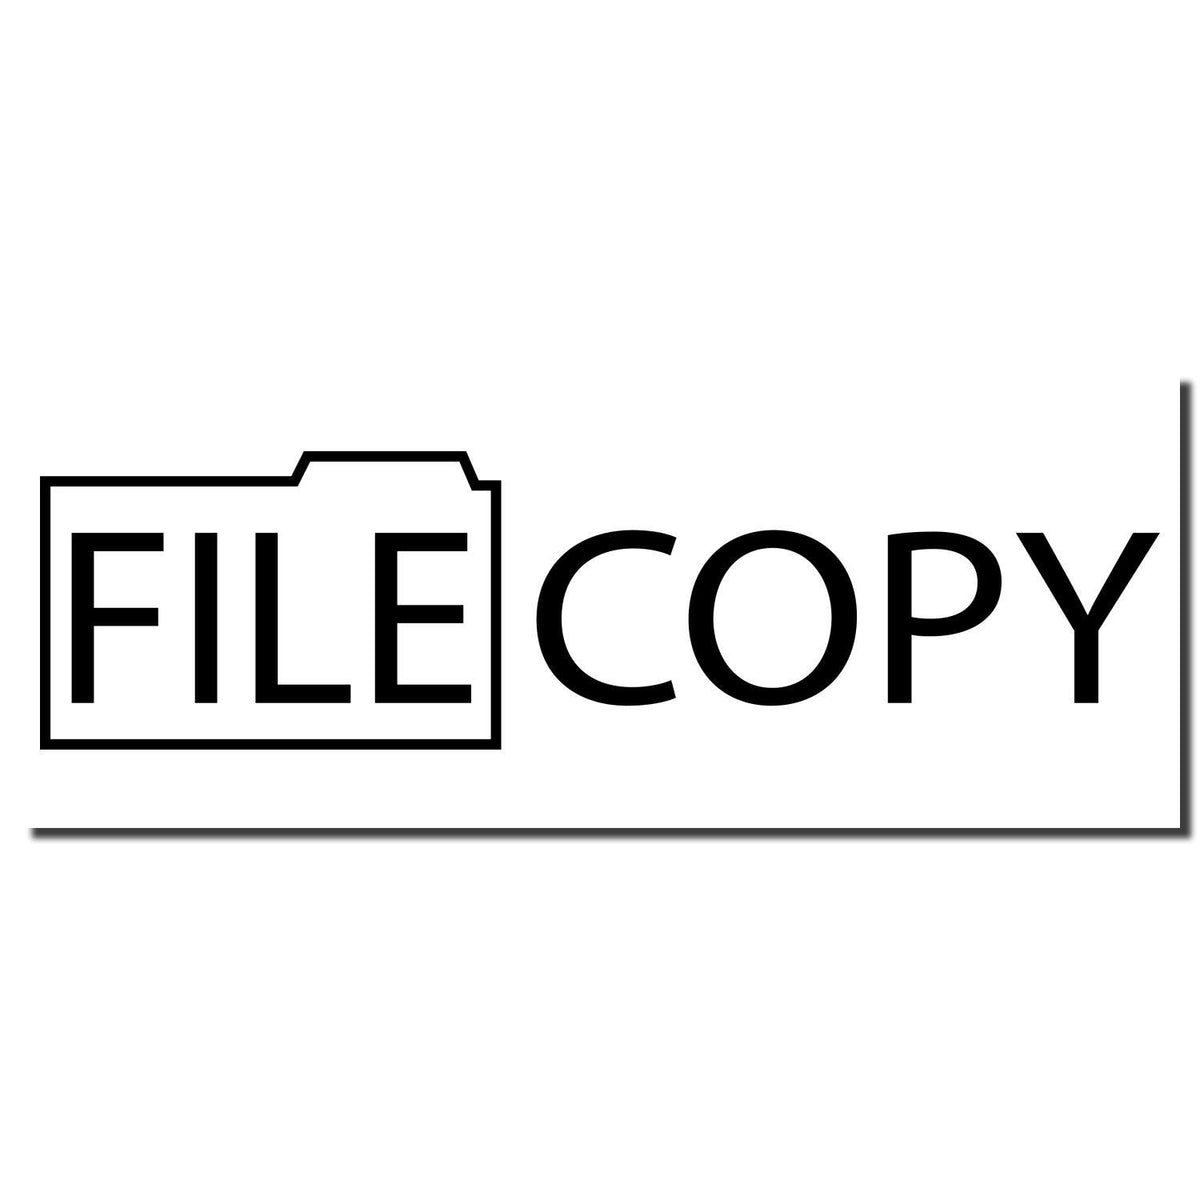 Enlarged Imprint Slim Pre-Inked File Copy with Folder Stamp Sample